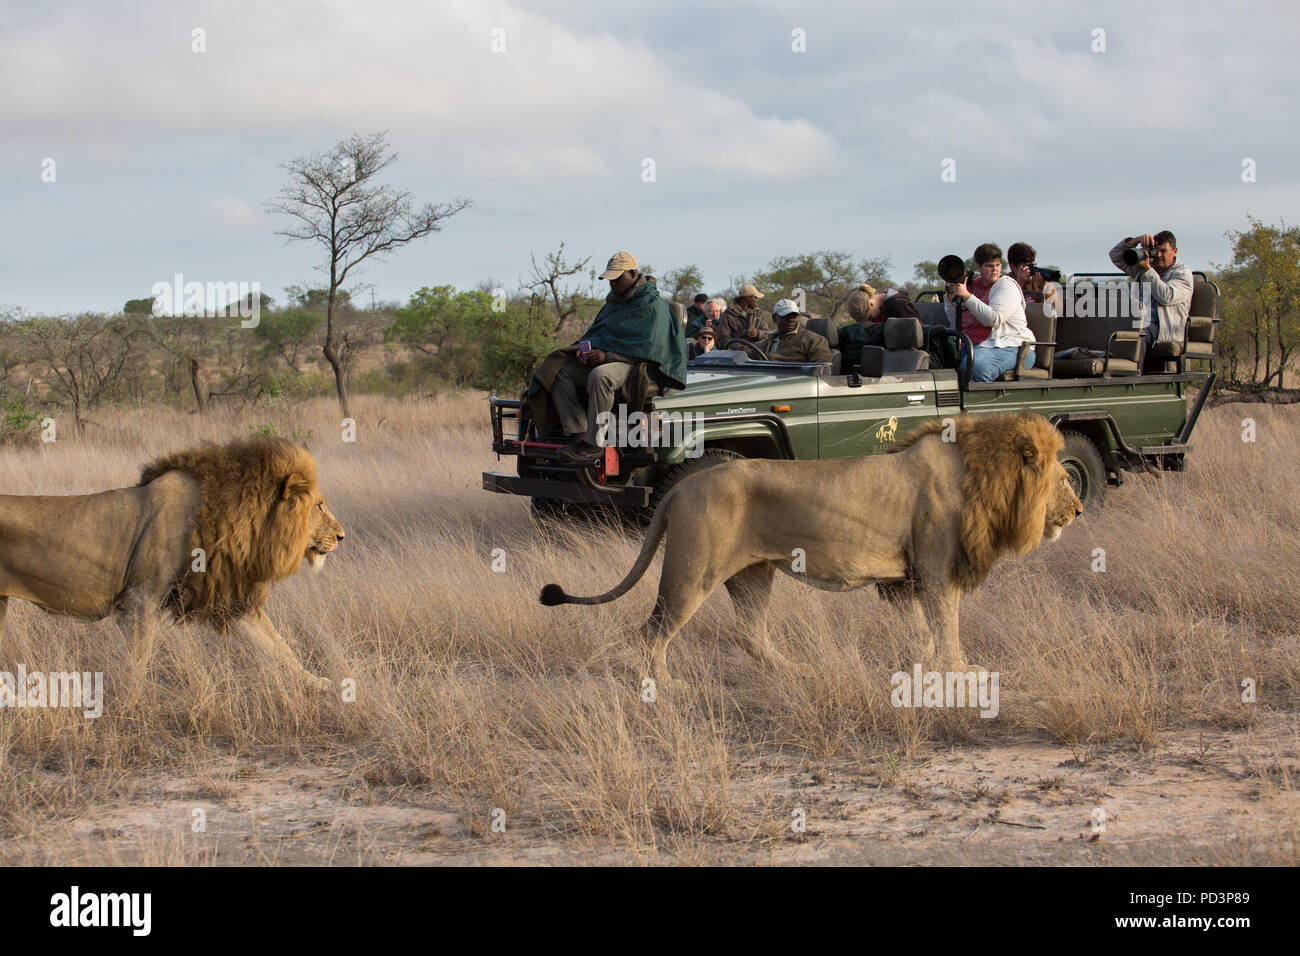 Los leones pasando por una abra Safari juego conducir el vehículo con los turistas tomando fotografías Foto de stock